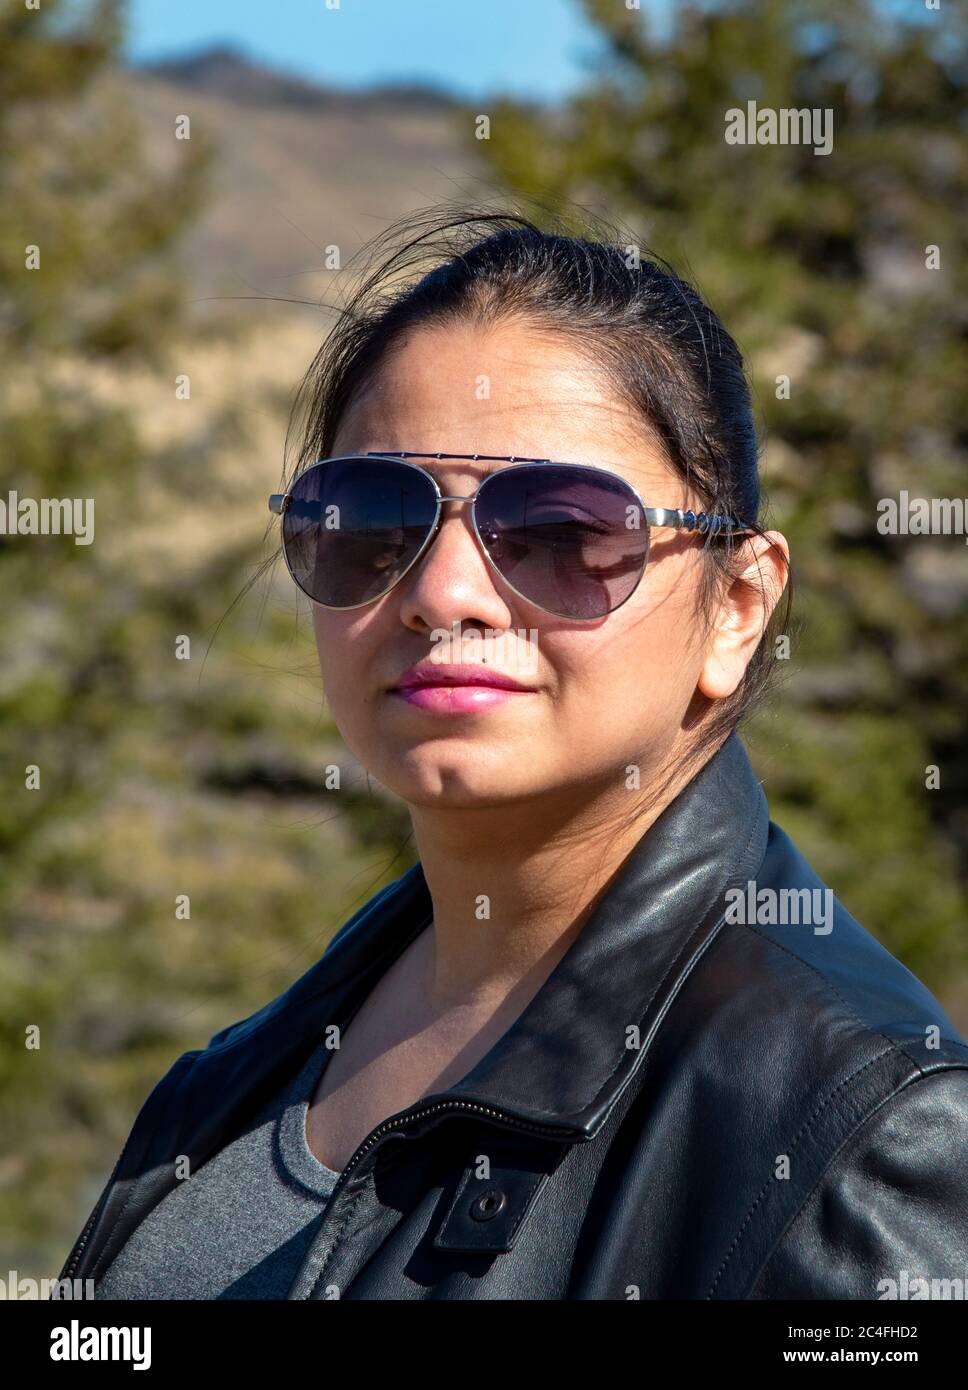 Hermosa mujer joven de pelo oscuro en chaqueta de cuero y gafas de sol Foto de stock